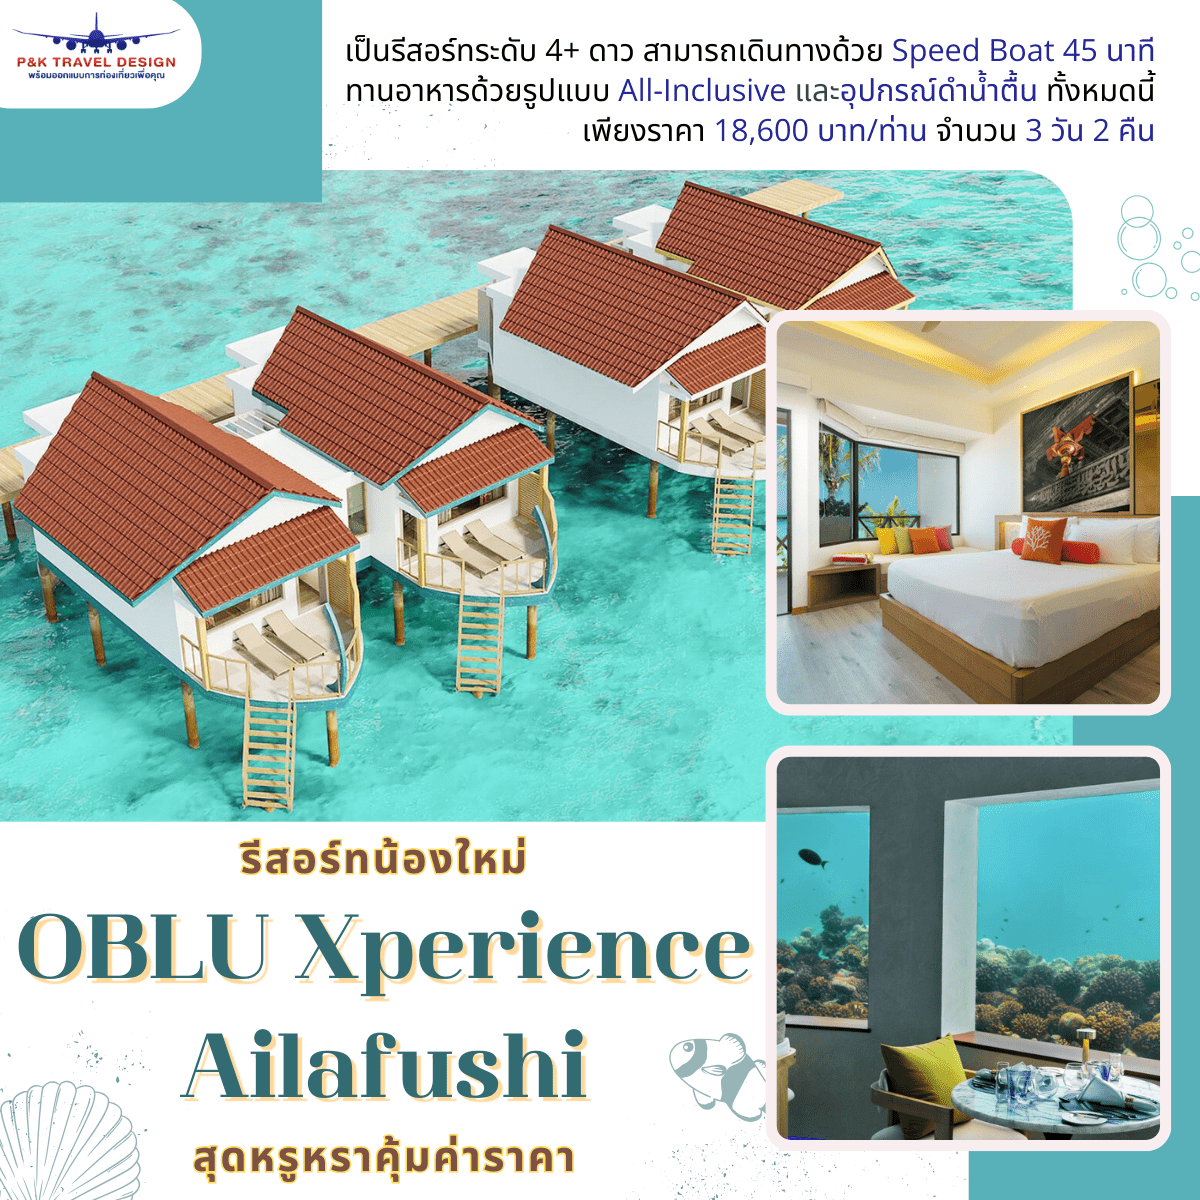 รีสอร์ทน้องใหม่ OBLU Xperience Ailafushi สุดหรูหราคุ้มค่าราคา